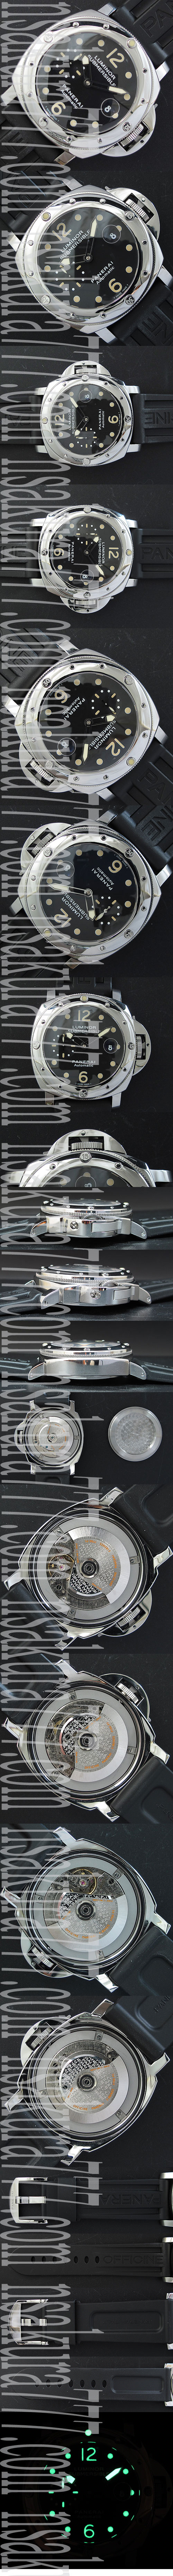 スーパーコピー時計パネライルミノール サブマーシブル 44mm 　PAM024，Asian 7750搭載！ - ウインドウを閉じる